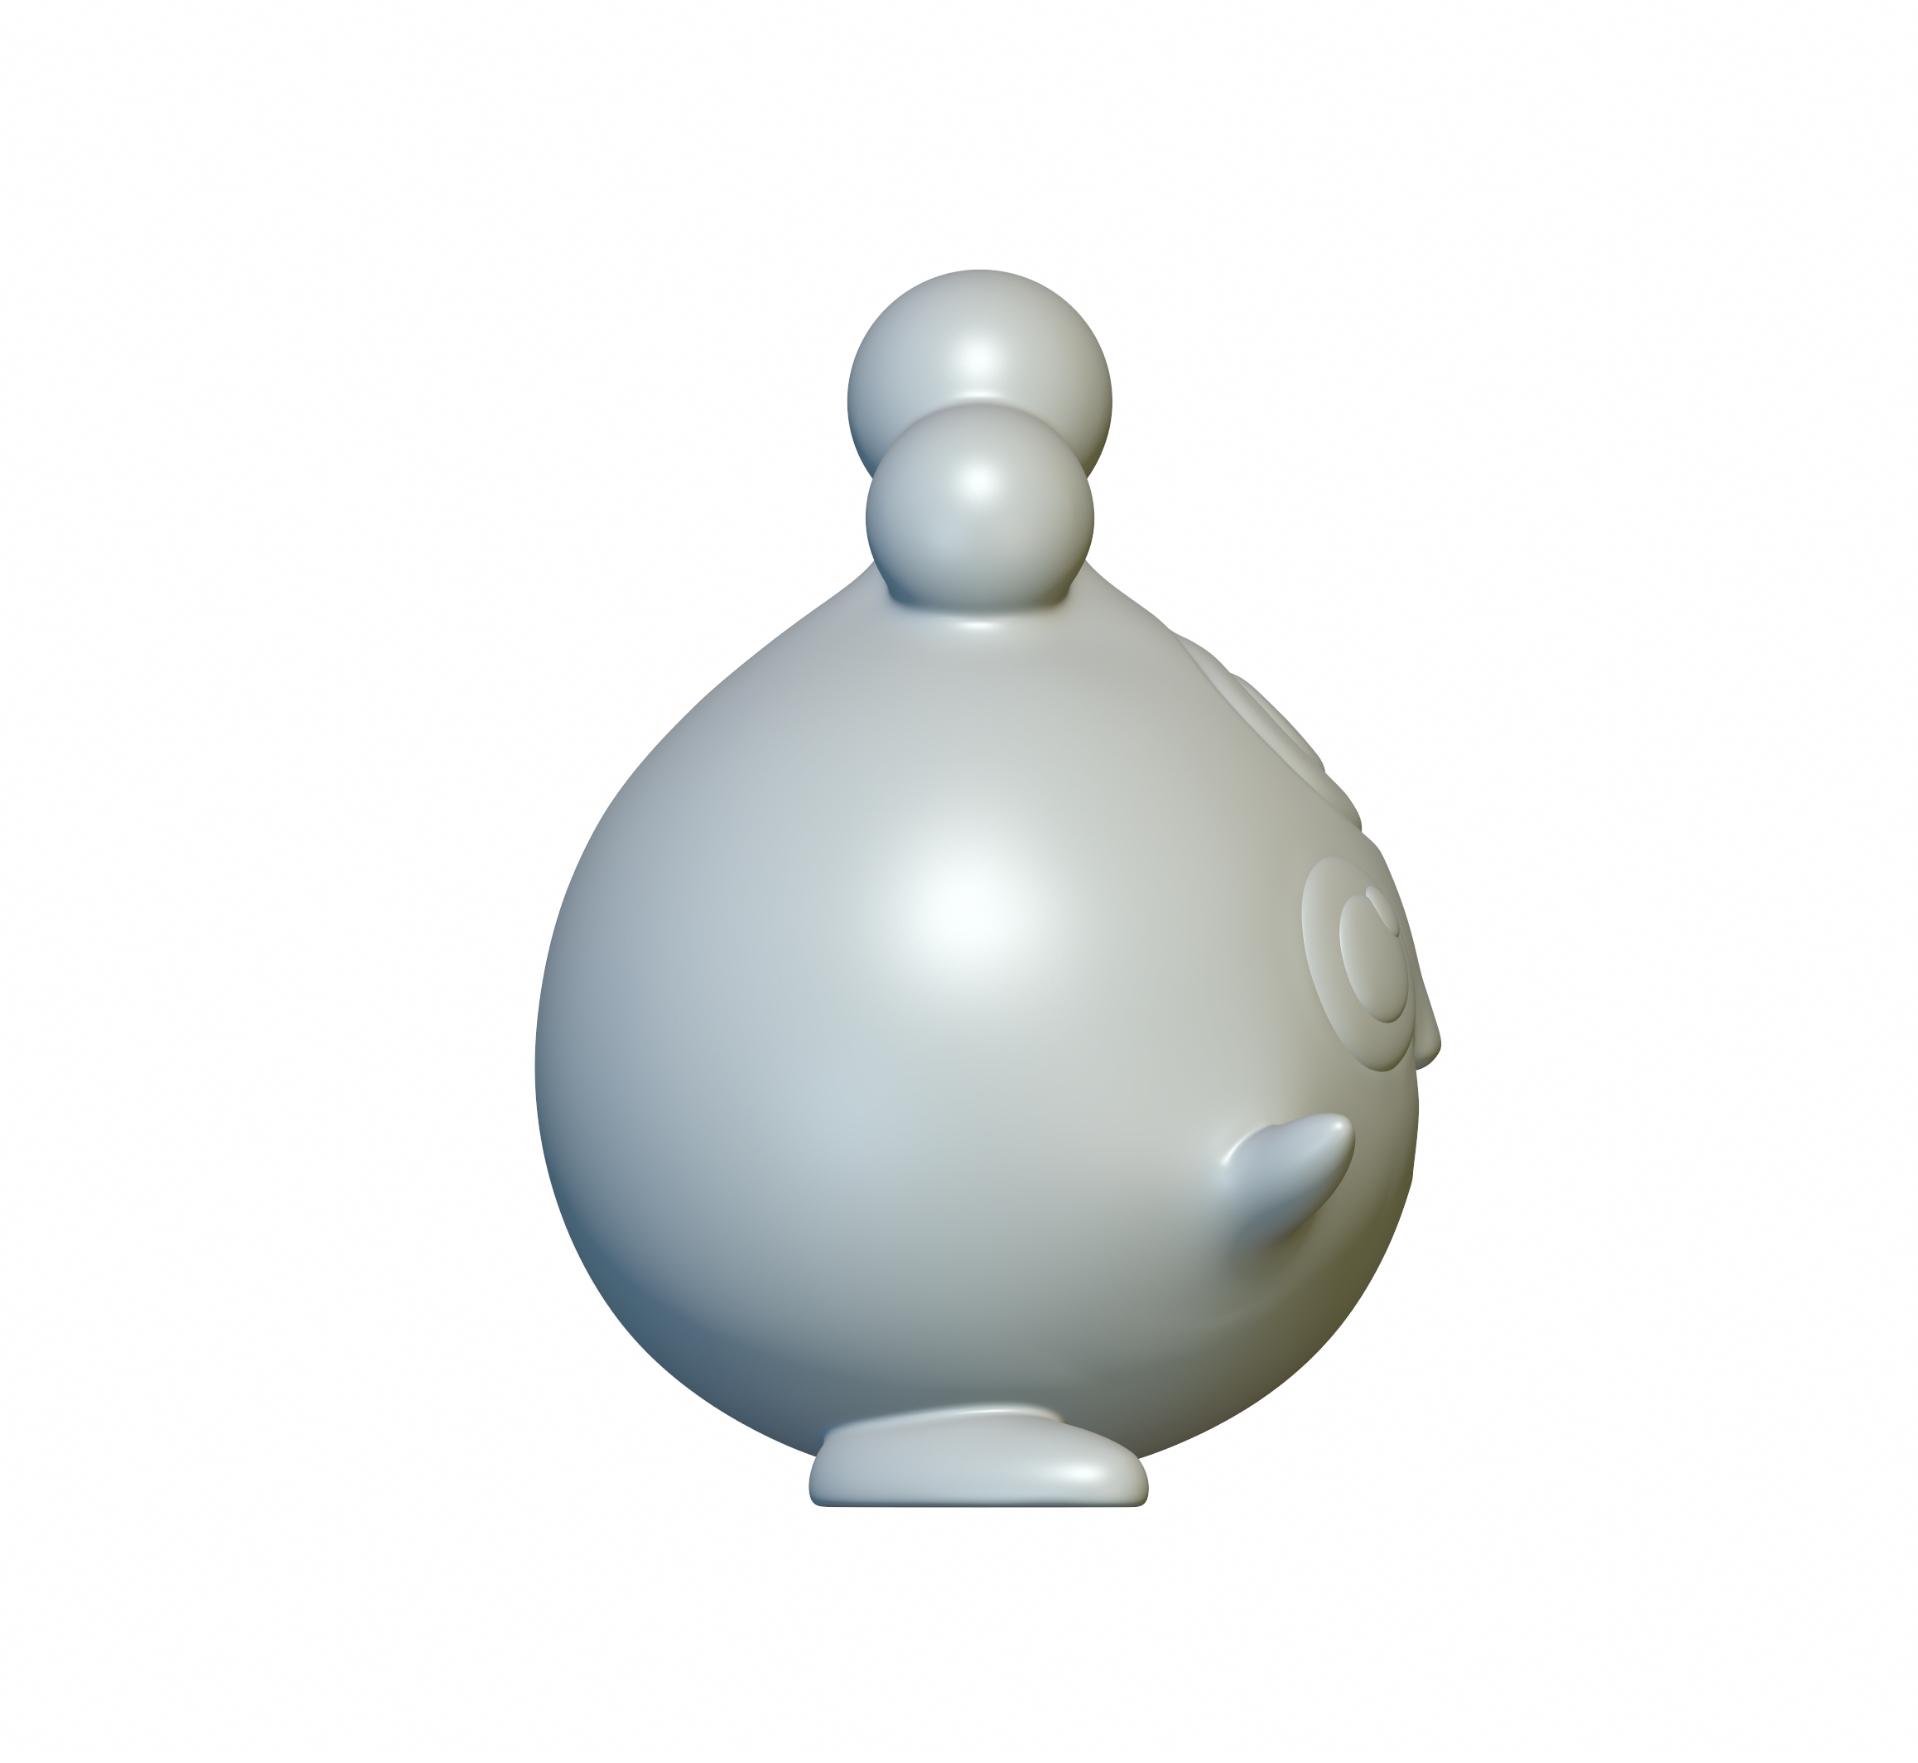 Pokemon Igglybuff #174 - Optimized for 3D Printing 3d model